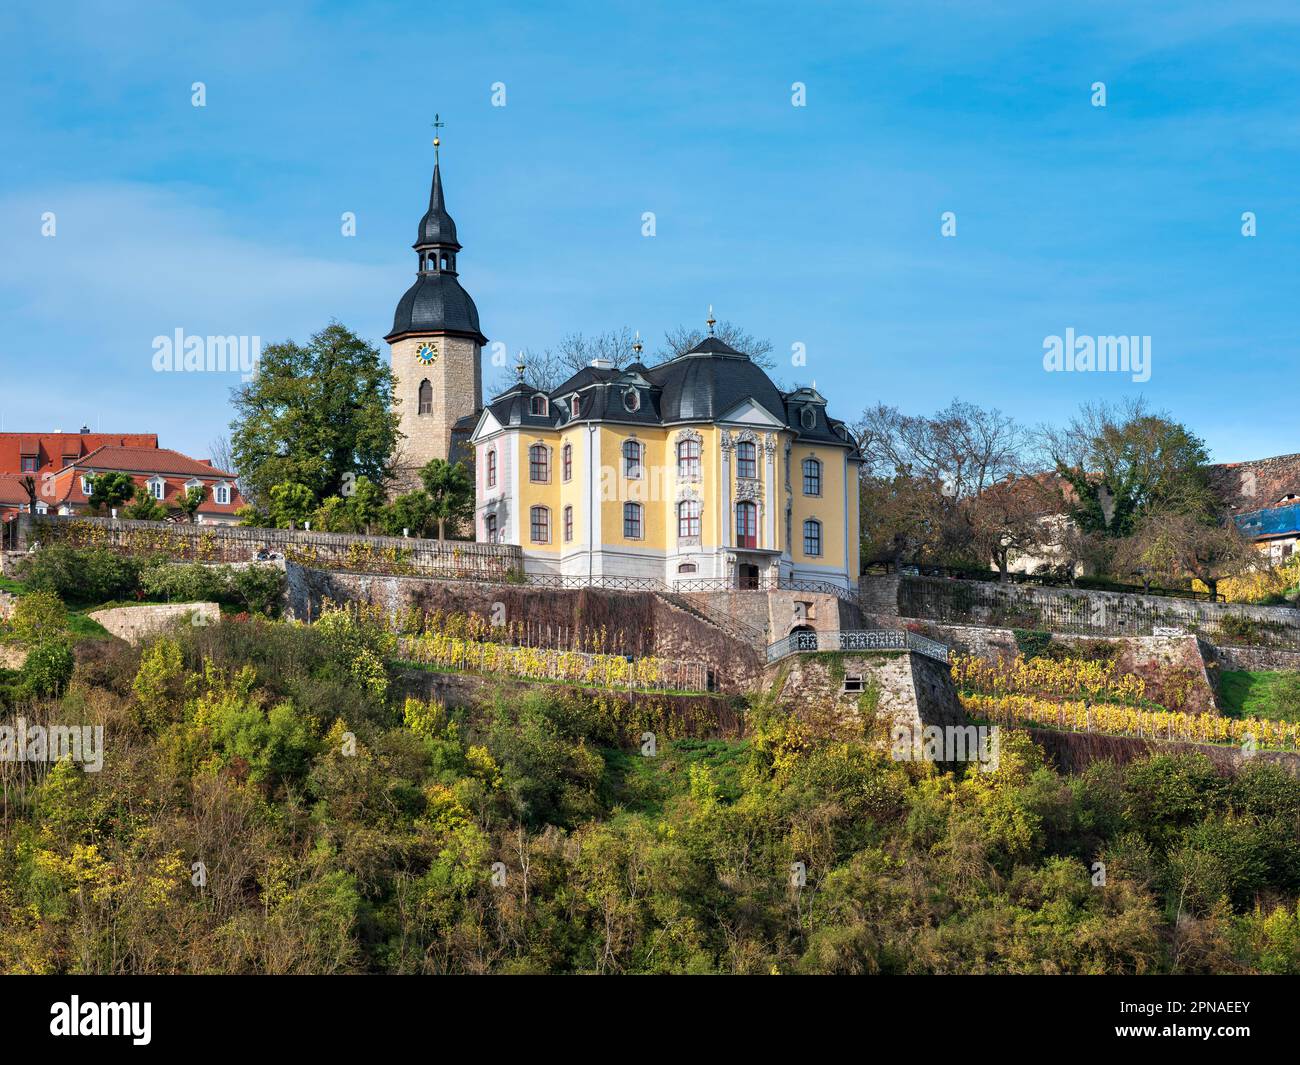 Châteaux de Dornburg, château de Rococo et tour de l'église de la haute ville, vallée de Saale, Dornburg-Camburg, Thuringe, Allemagne Banque D'Images